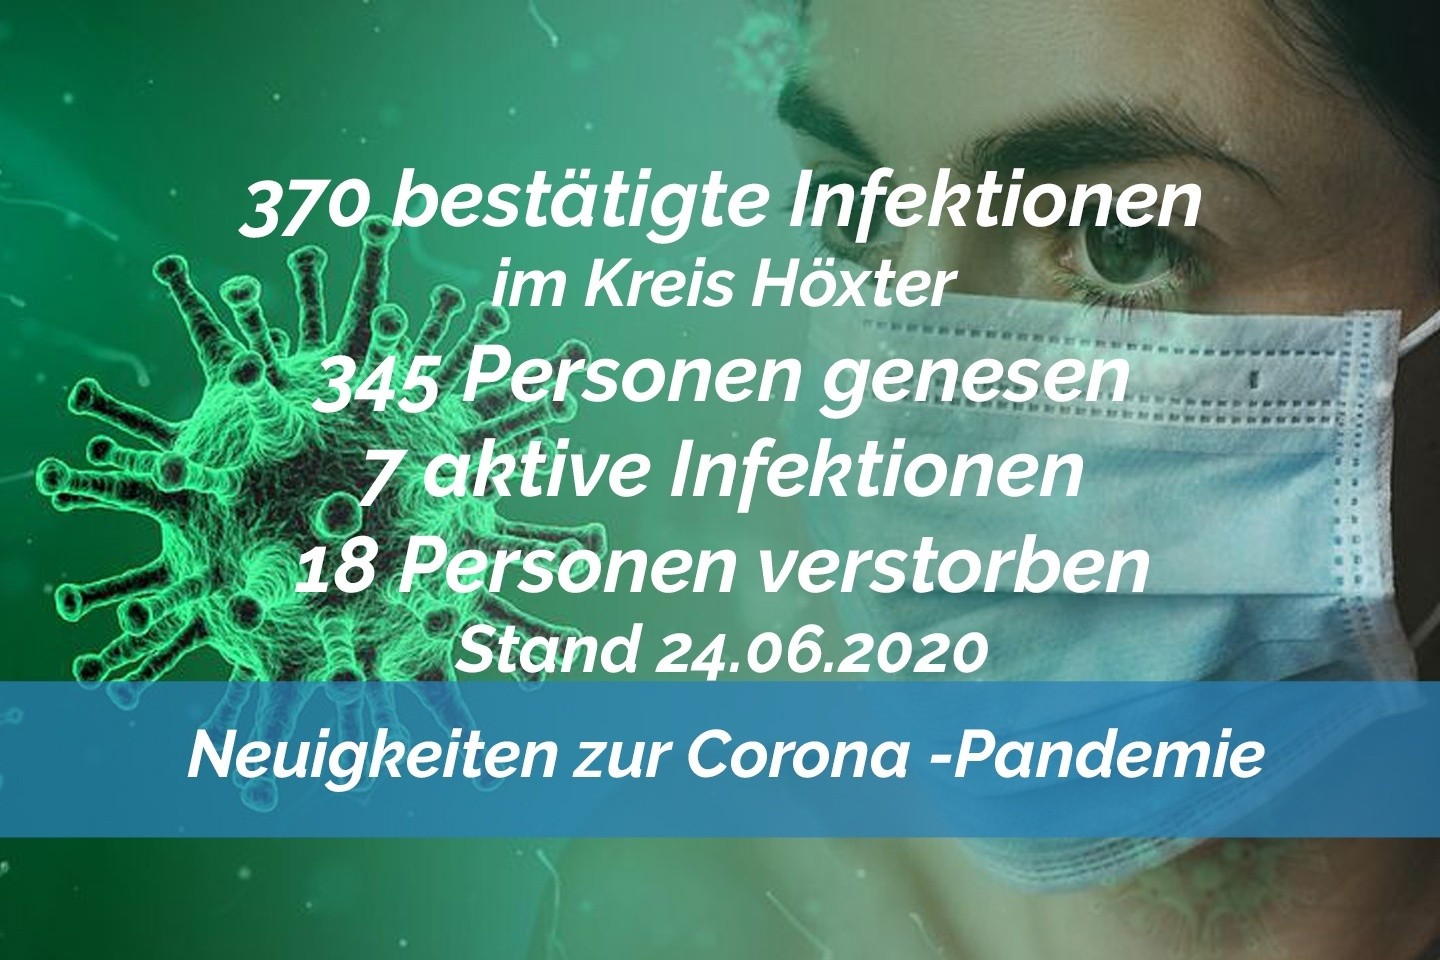 Update vom 24. Juni: 370 bestätigte Infektionen mit dem neuen Coronavirus im Kreis Höxter